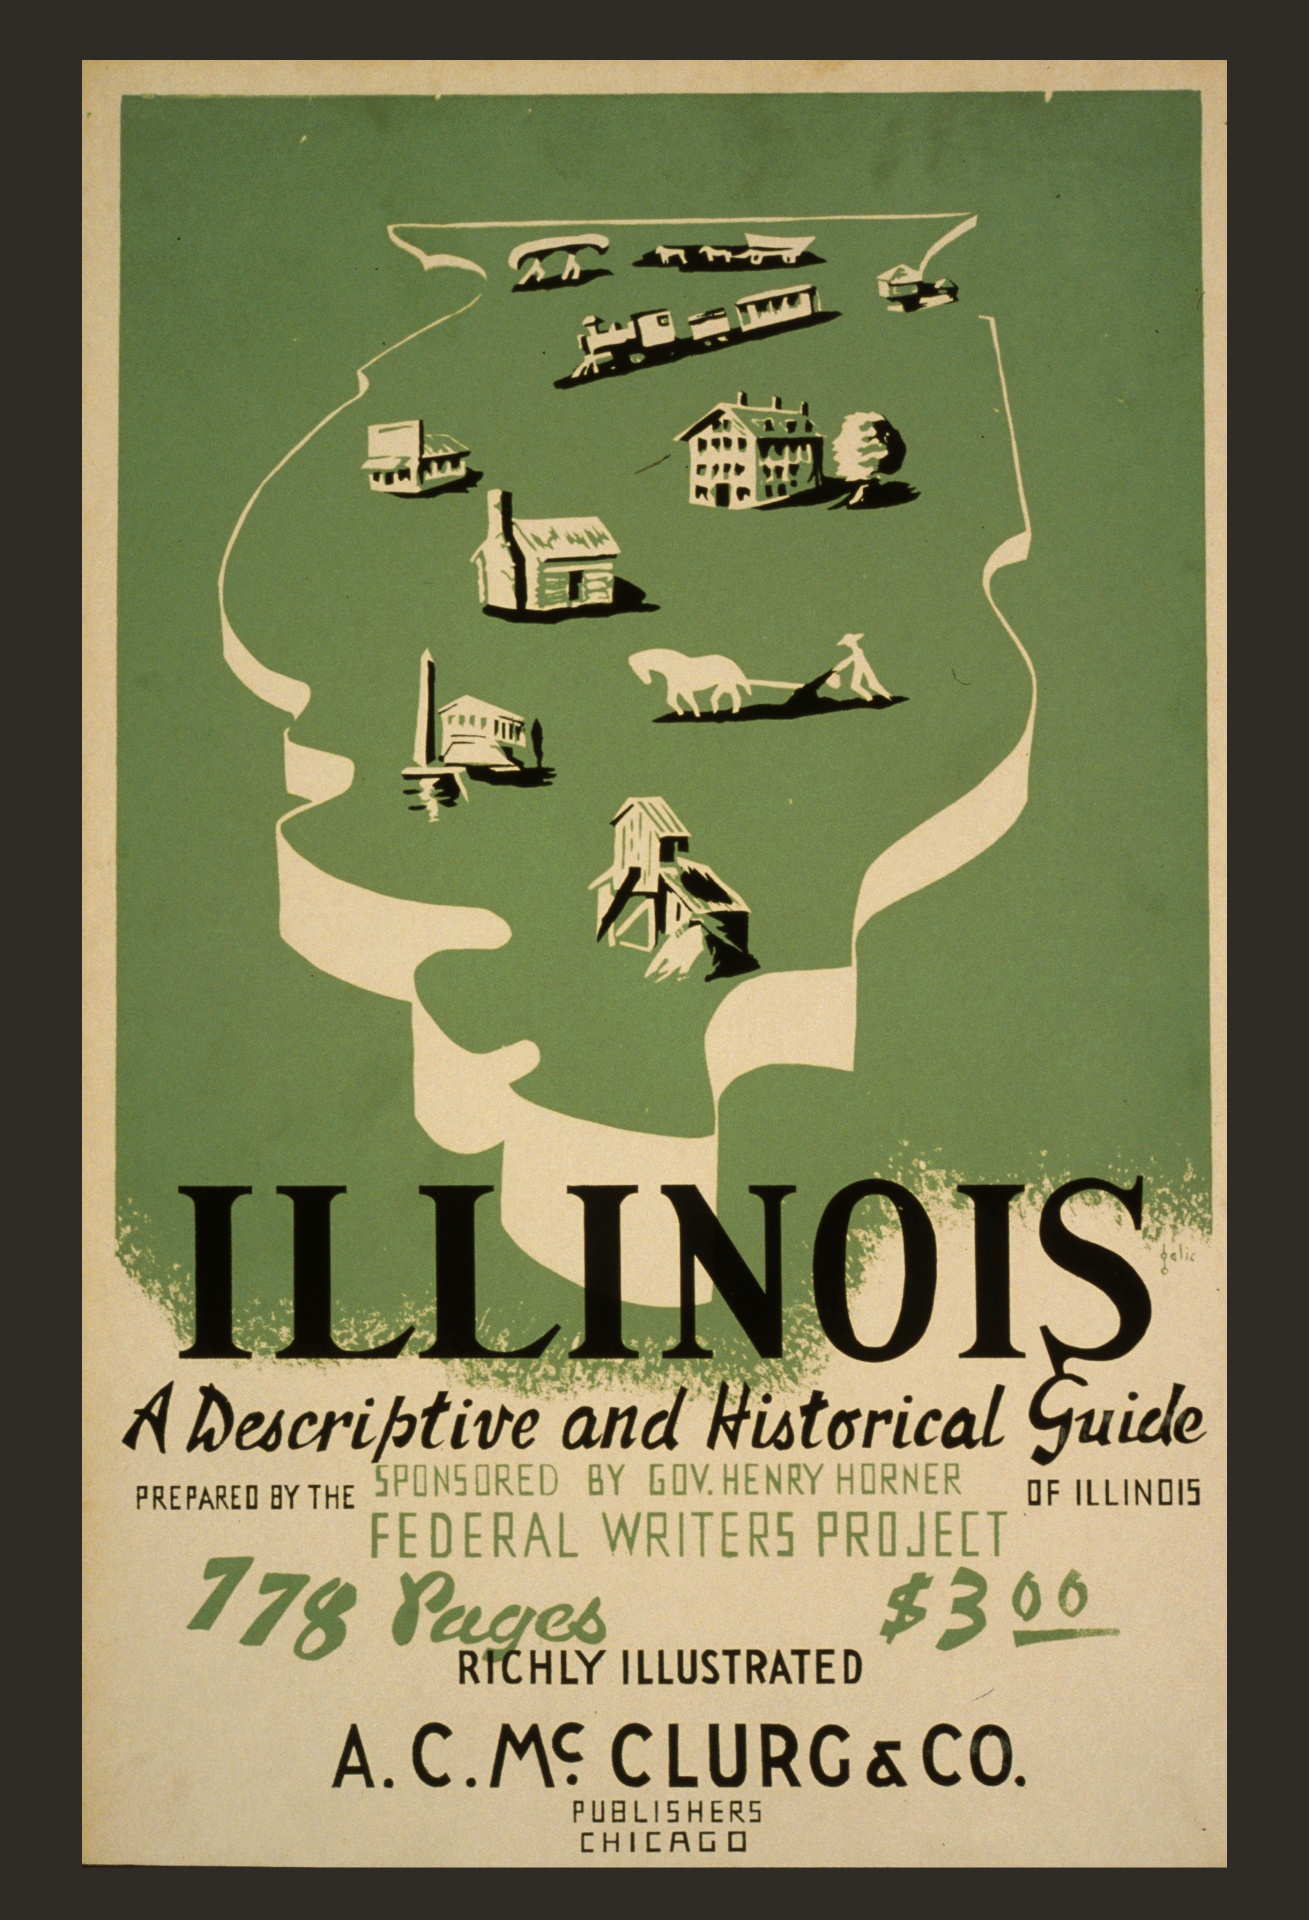 Cartaz do curso de Illinois